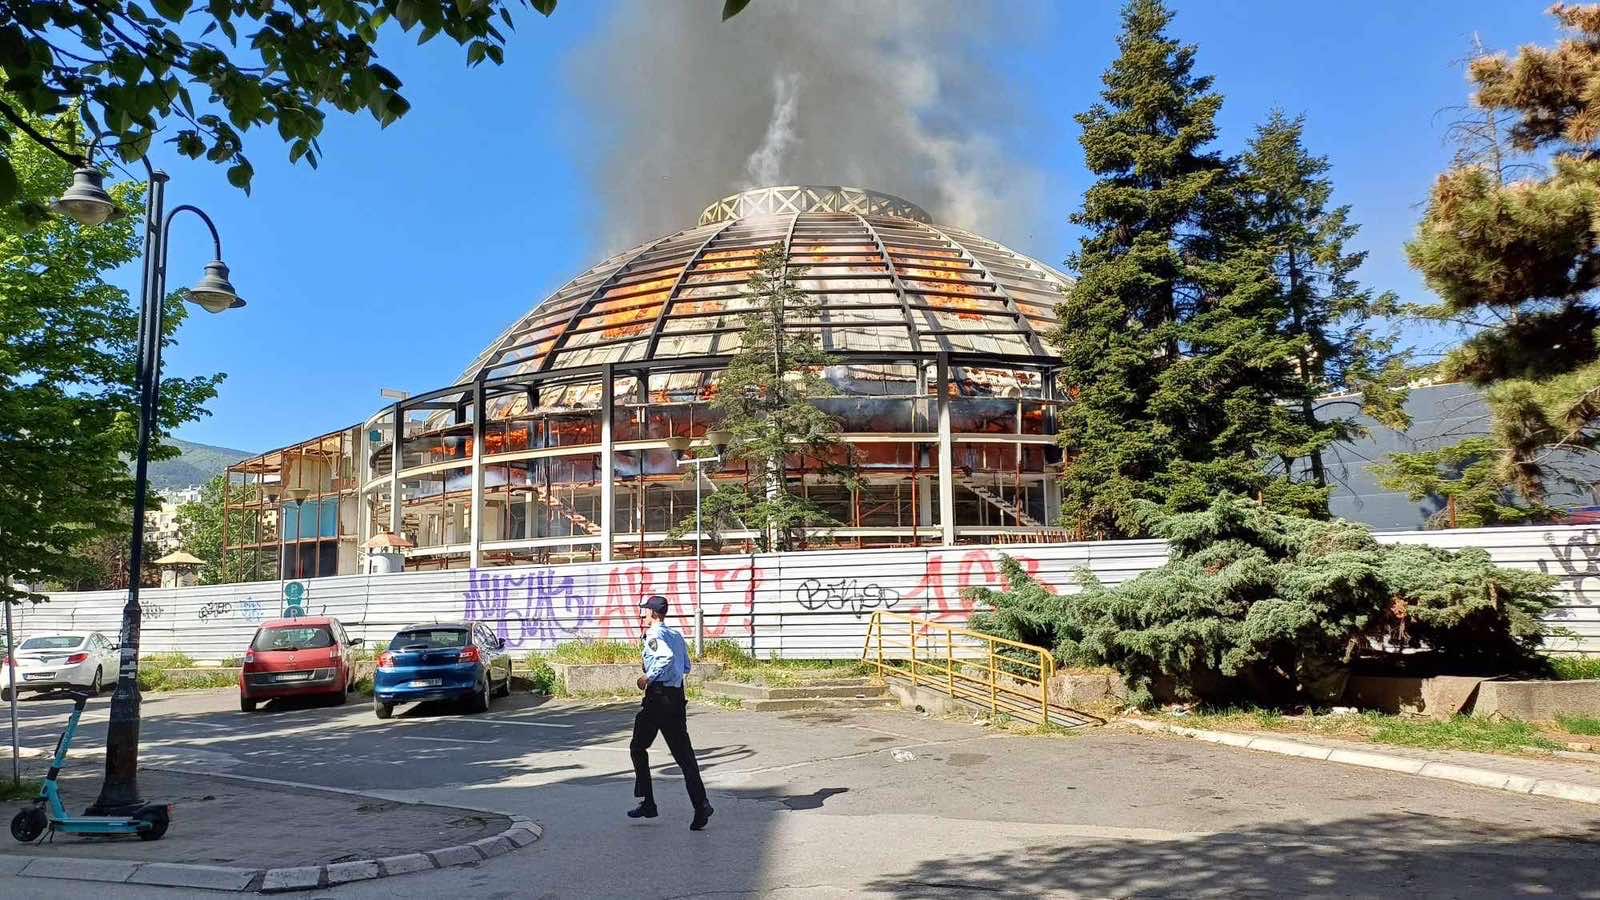 Скопје остана без својот култен симбол – до темел изгоре култната Универзална сала